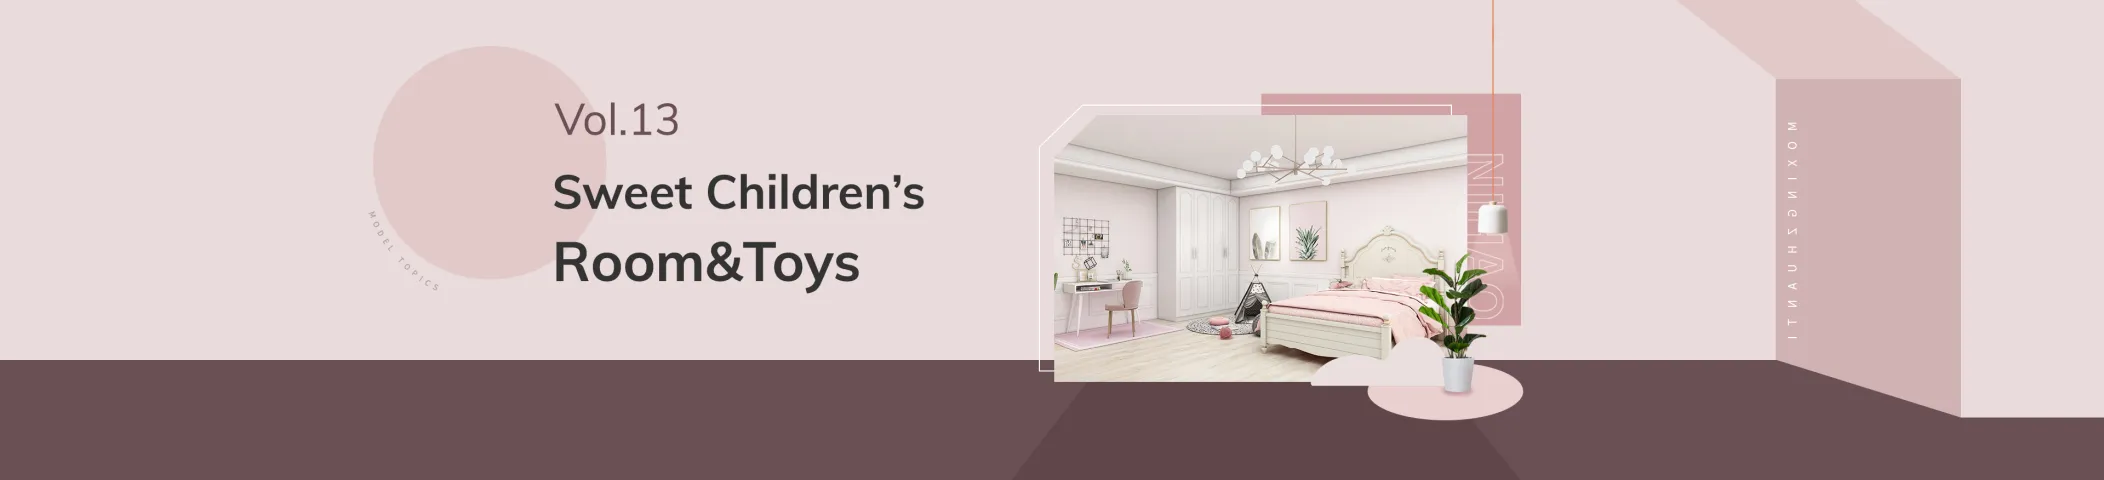 Sweet Children's Room&Toys